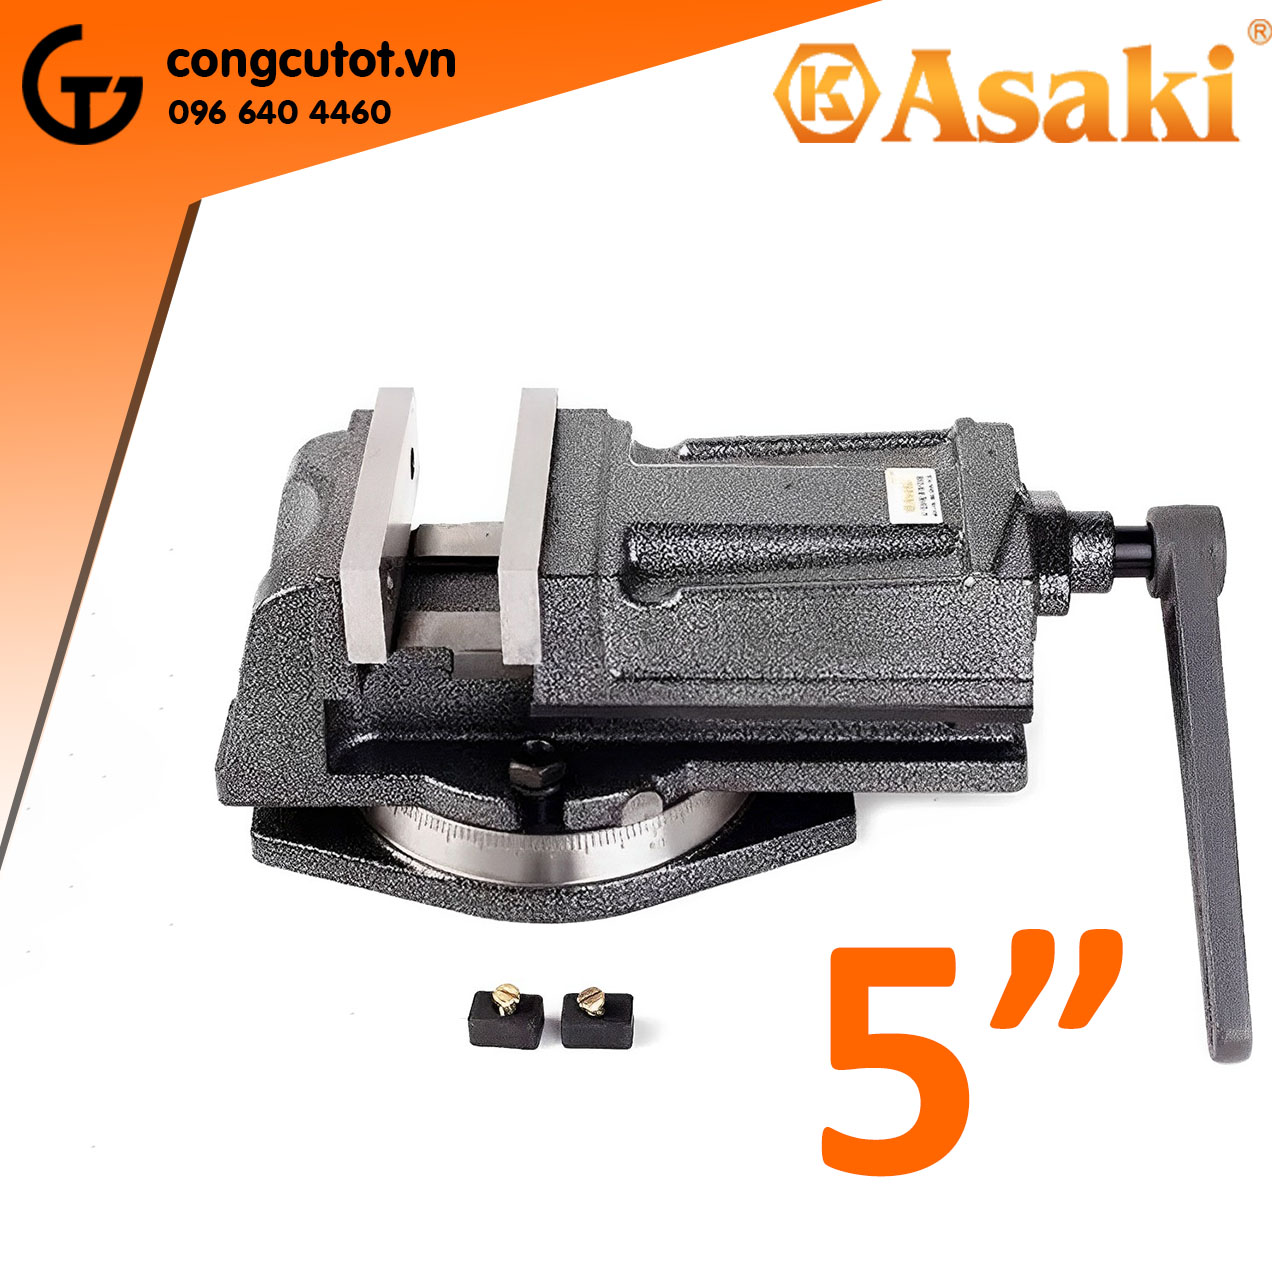 Ê tô bàn phay mâm xoay 5" Asaki AK-6281 chuyển để kẹp, cố định các chi tiết cần gia công